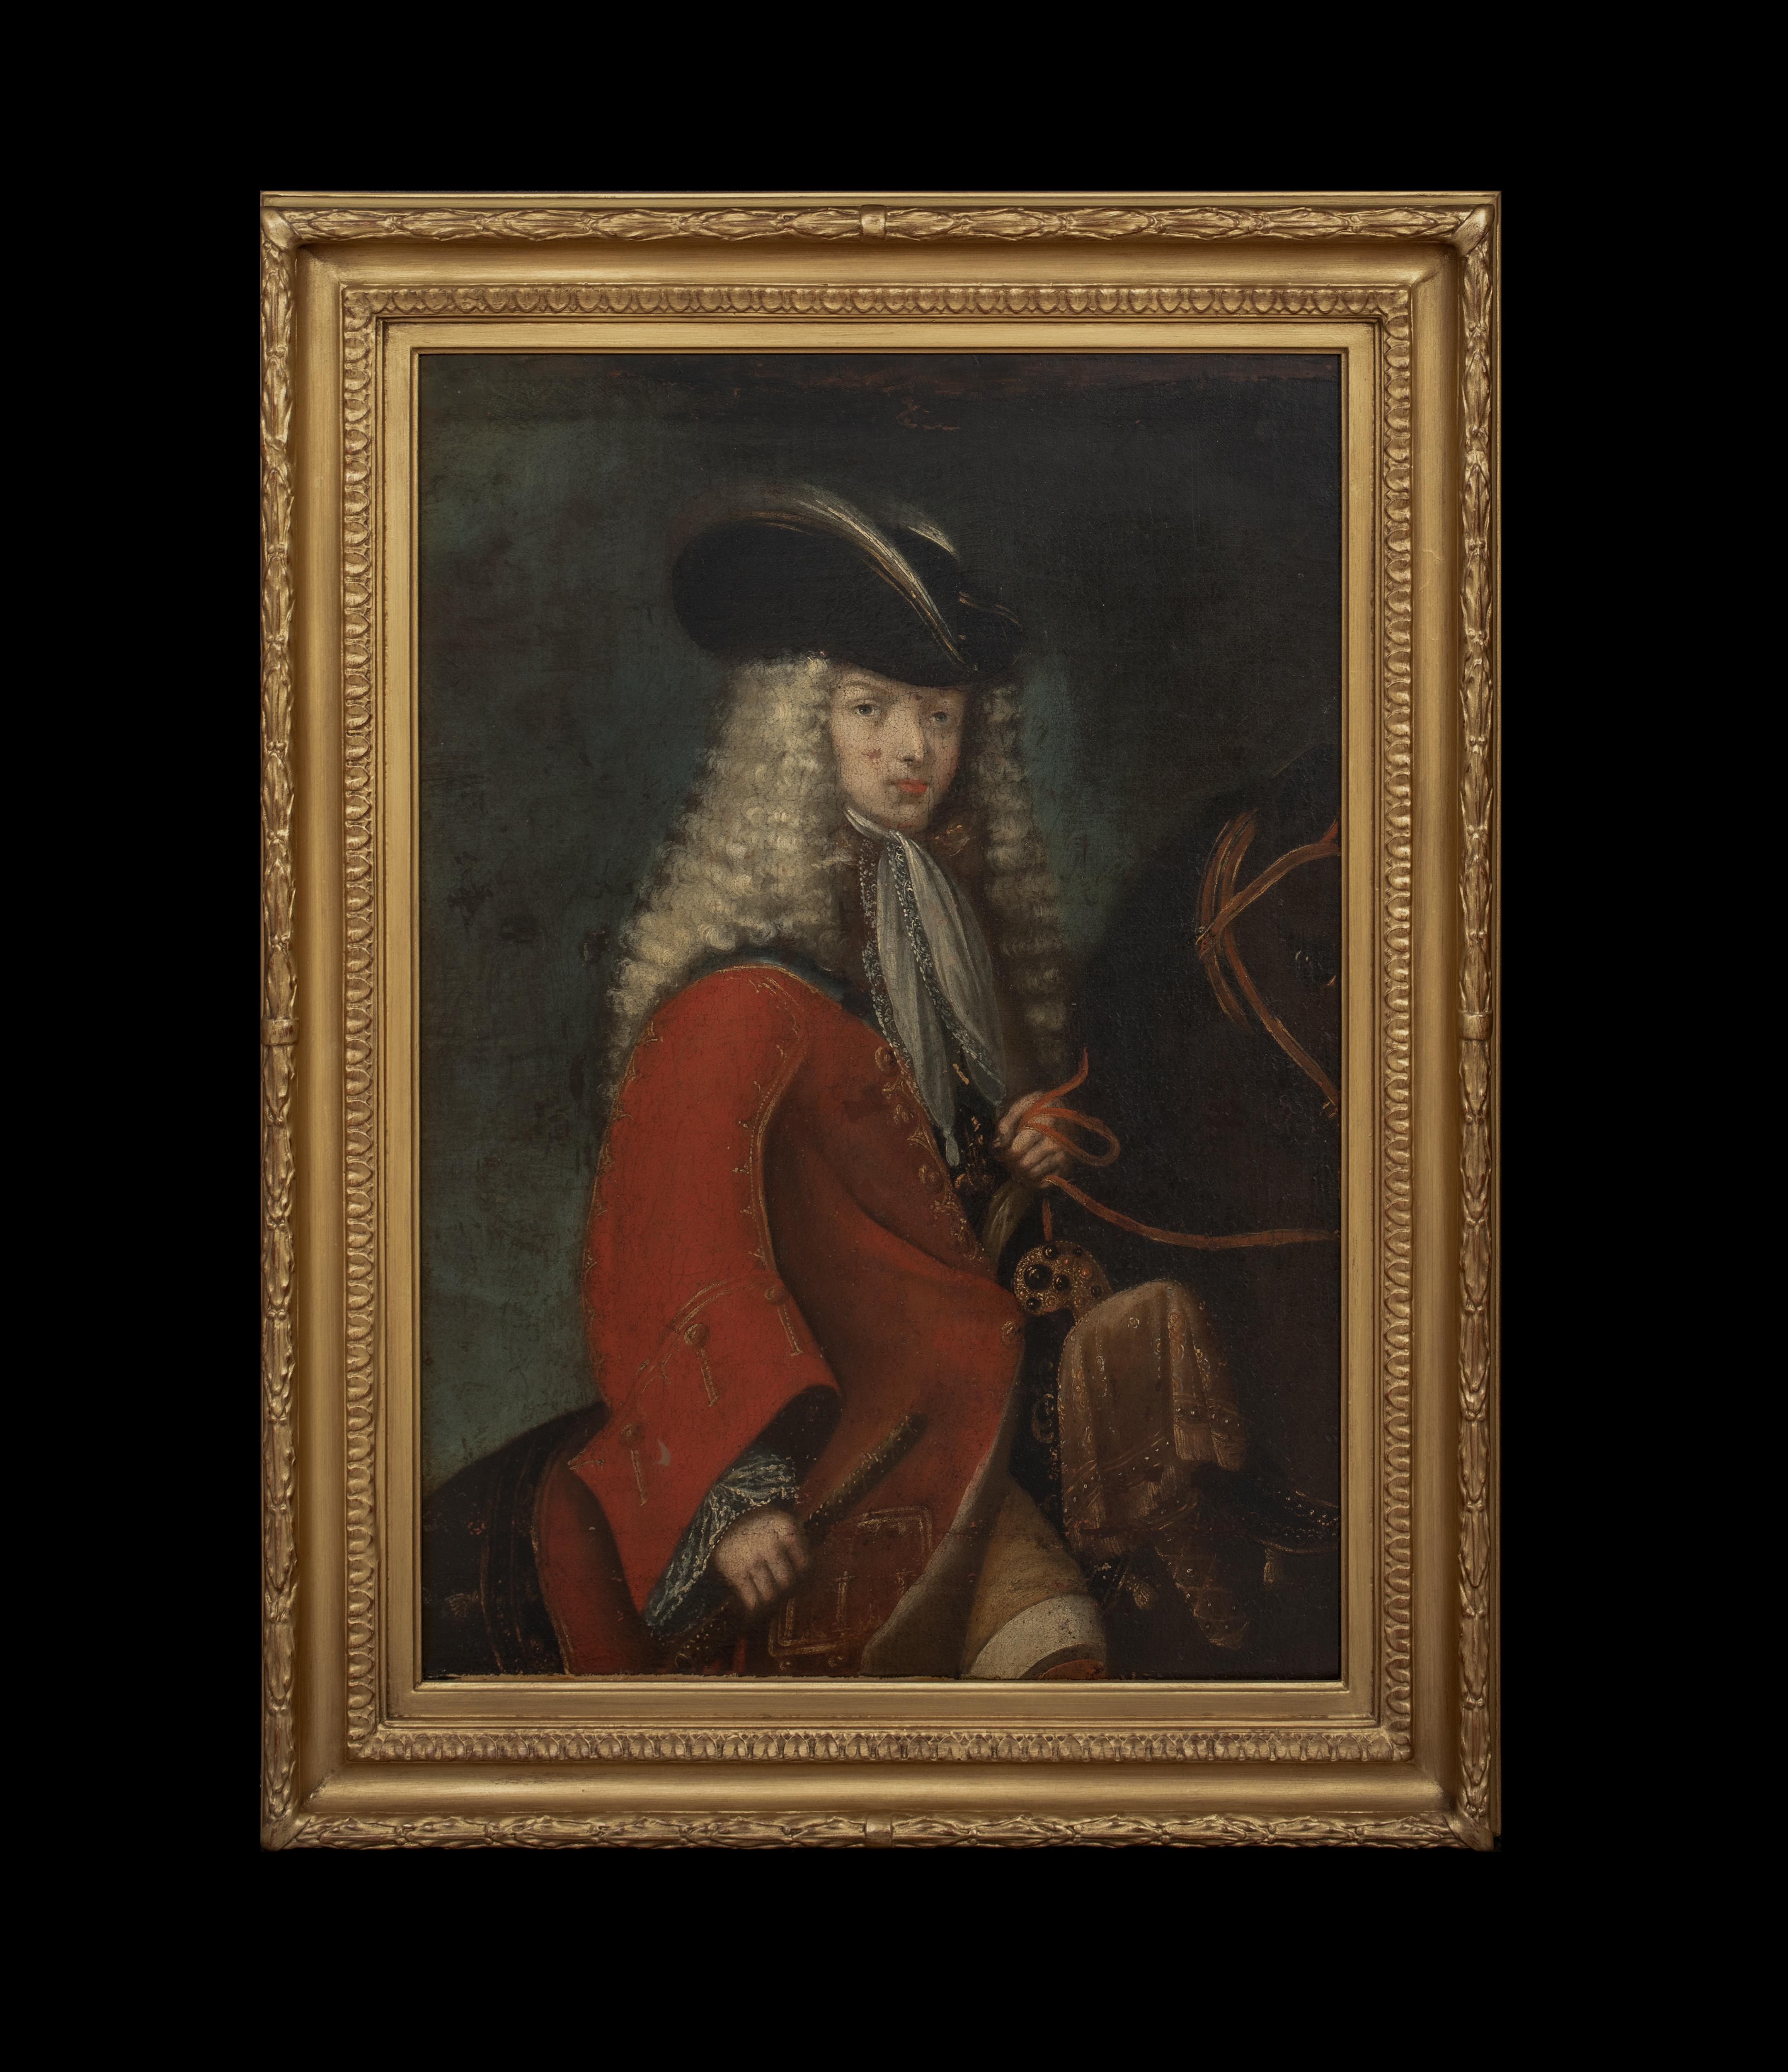 Porträt von König Philip V. (1683-1746) von Spanien, 18. Jahrhundert   Spanische Schule – Painting von Unknown